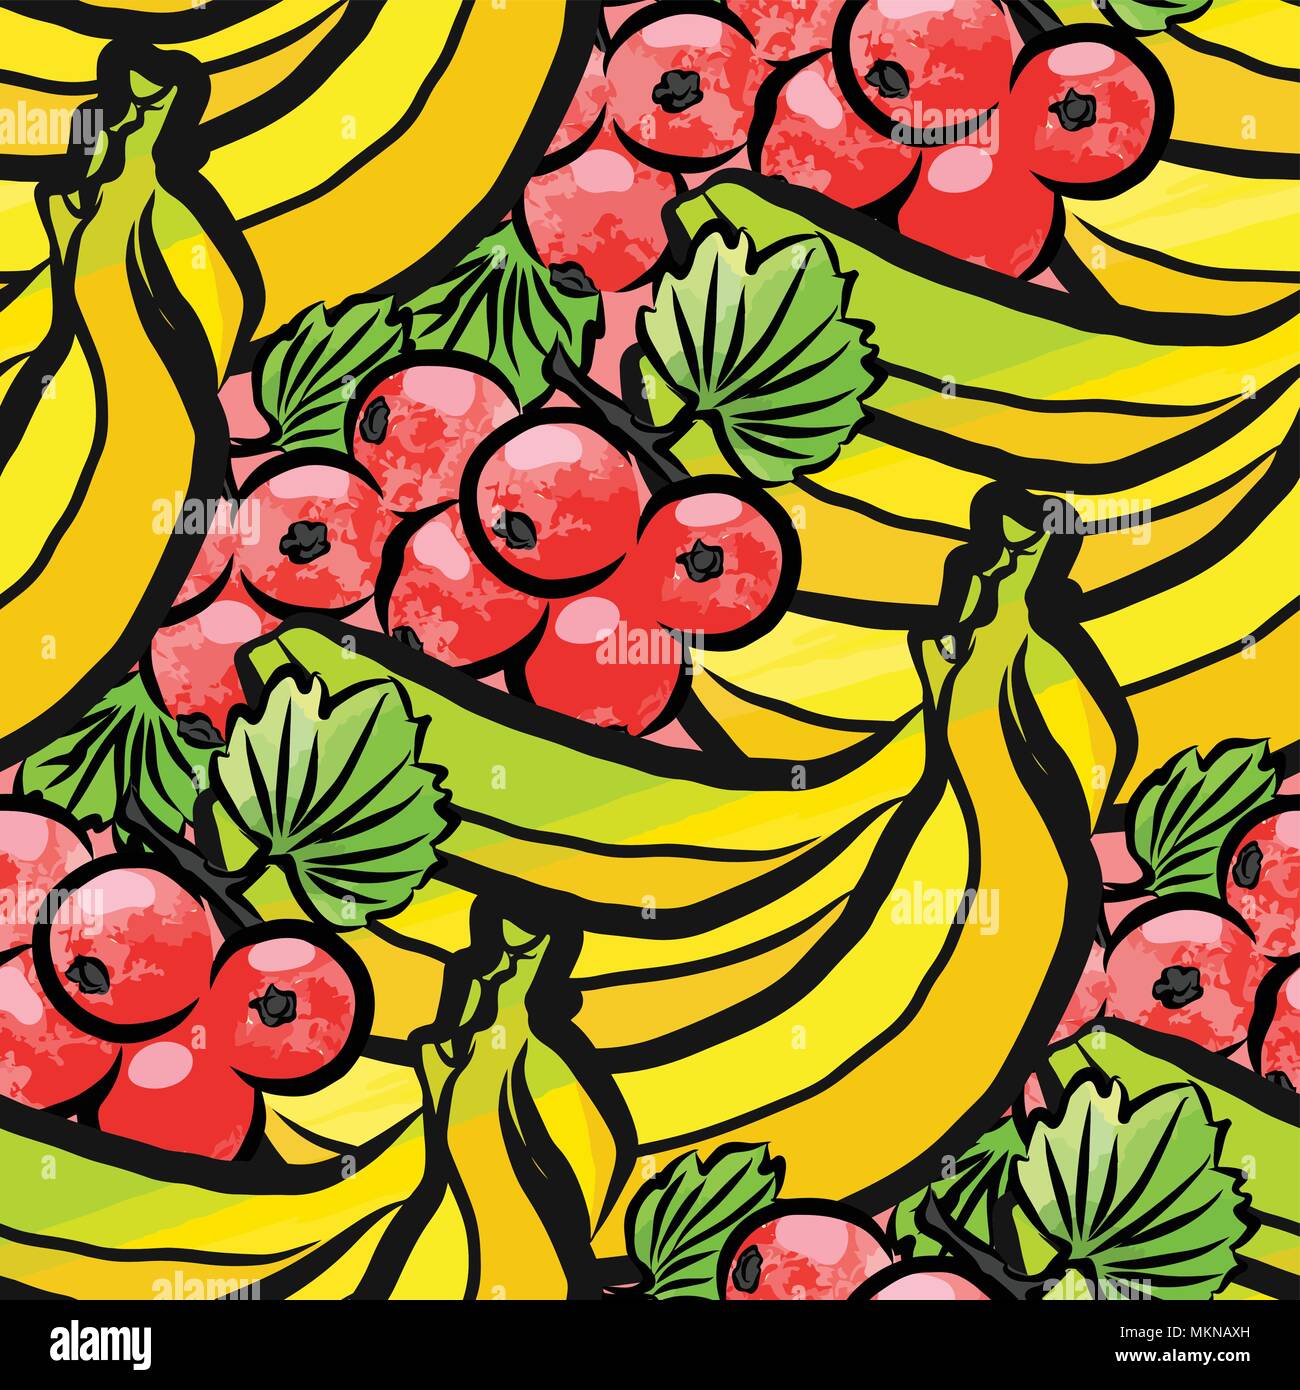 Vektor nahtlose Muster von Johannisbeere und Bananen. Von Hand gezeichnet und farbige Abbildung Stock Vektor